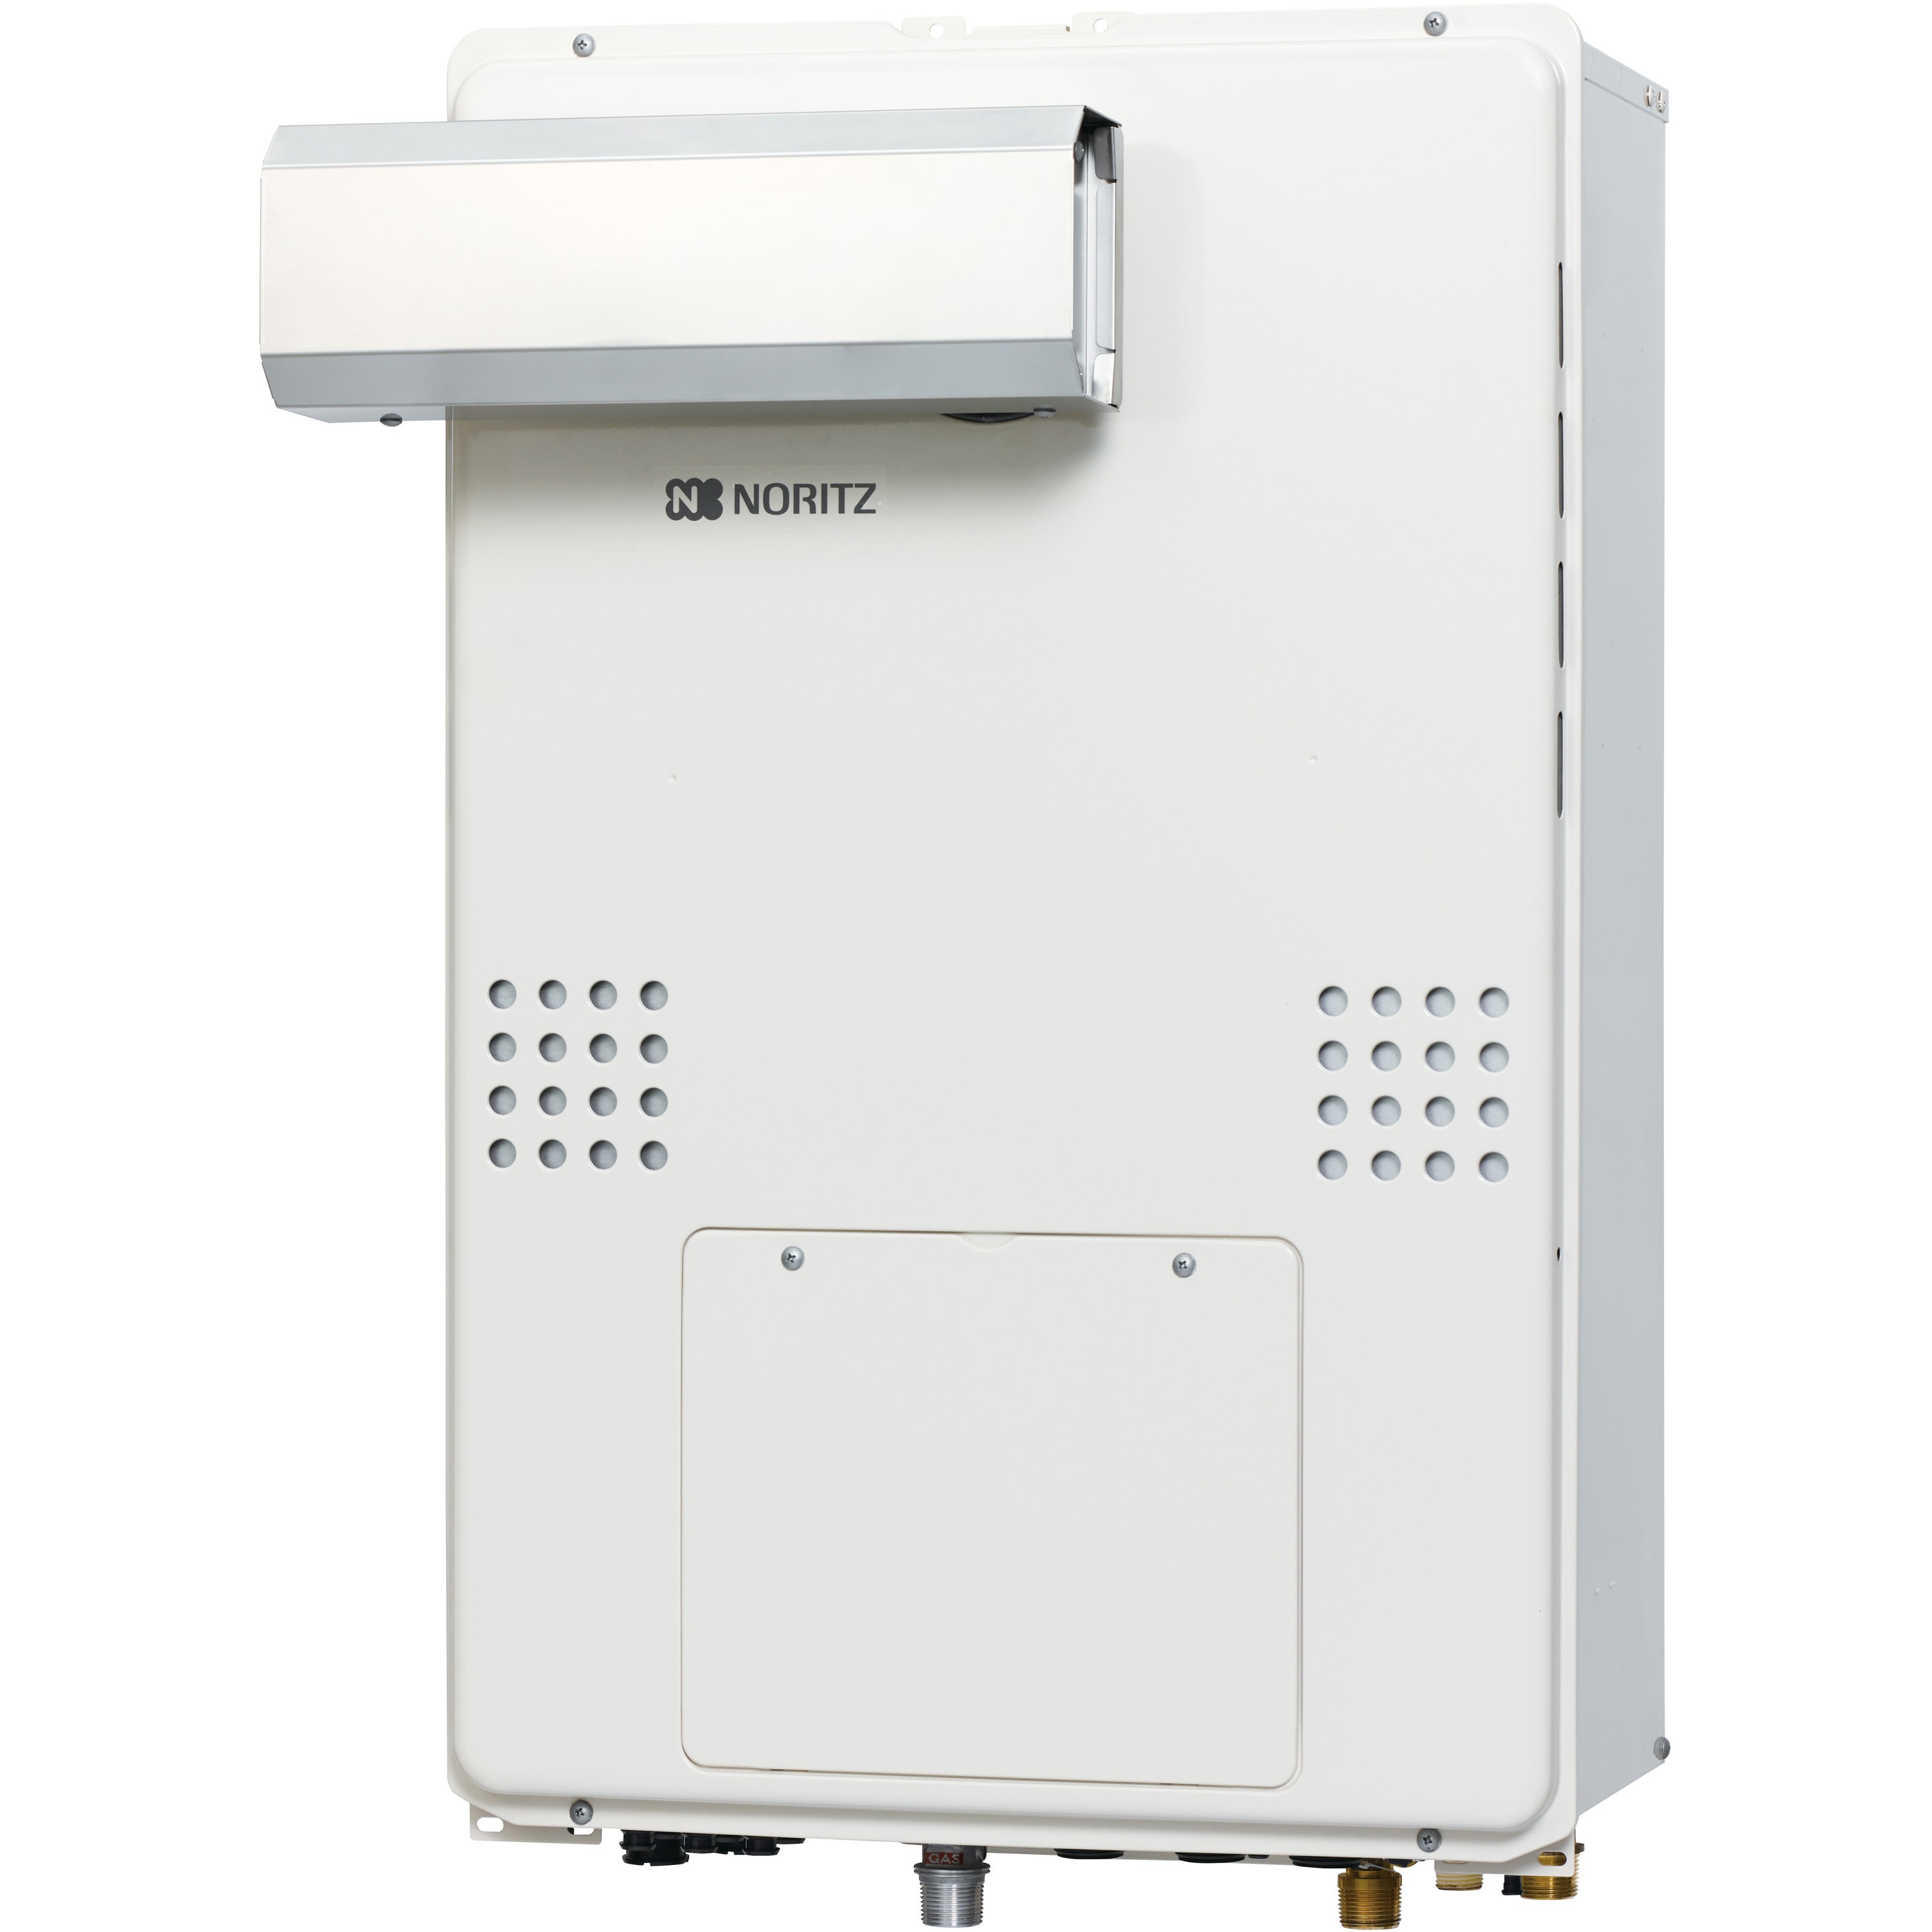 GTH-C1660SAW-L-1 BL 高効率ガス温水暖房付ふろ給湯器(オート) PS